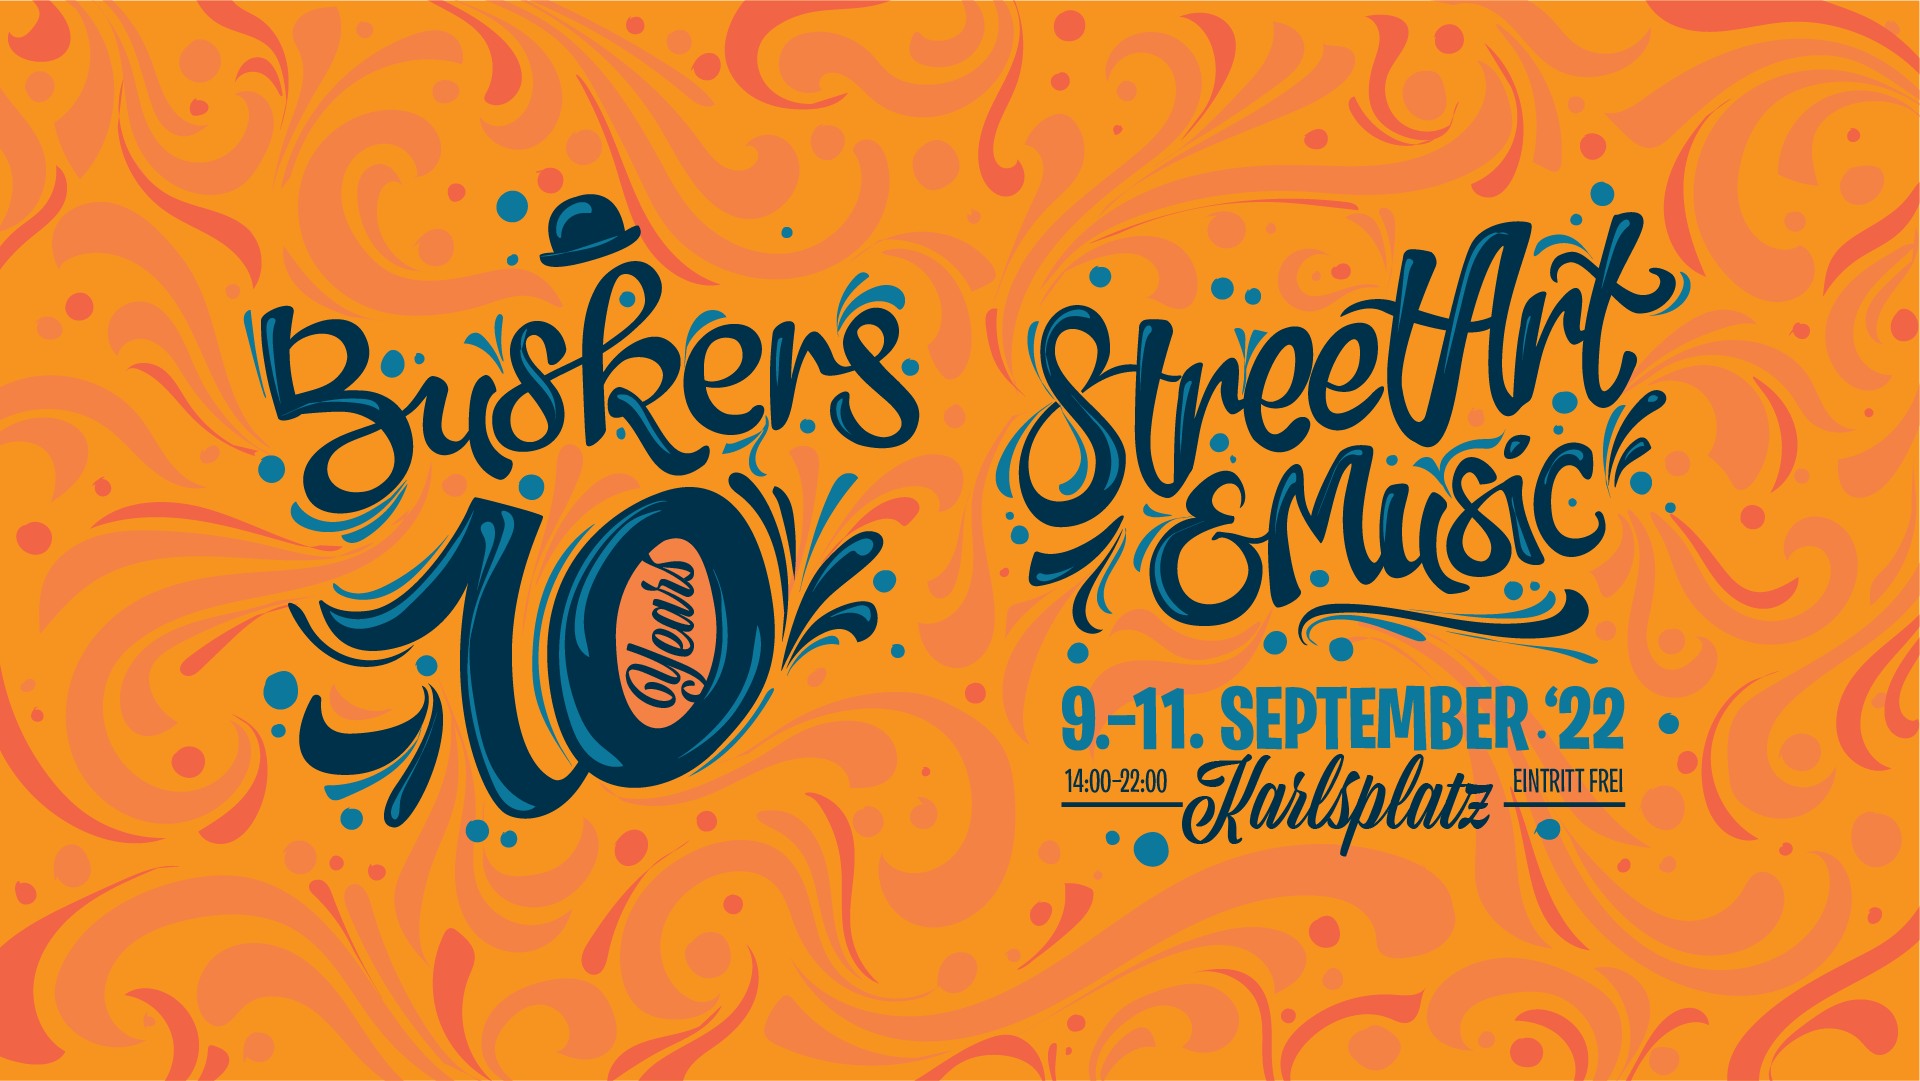 Buskers Festival 2022 am 9. September 2022 @ Karlsplatz Wien.